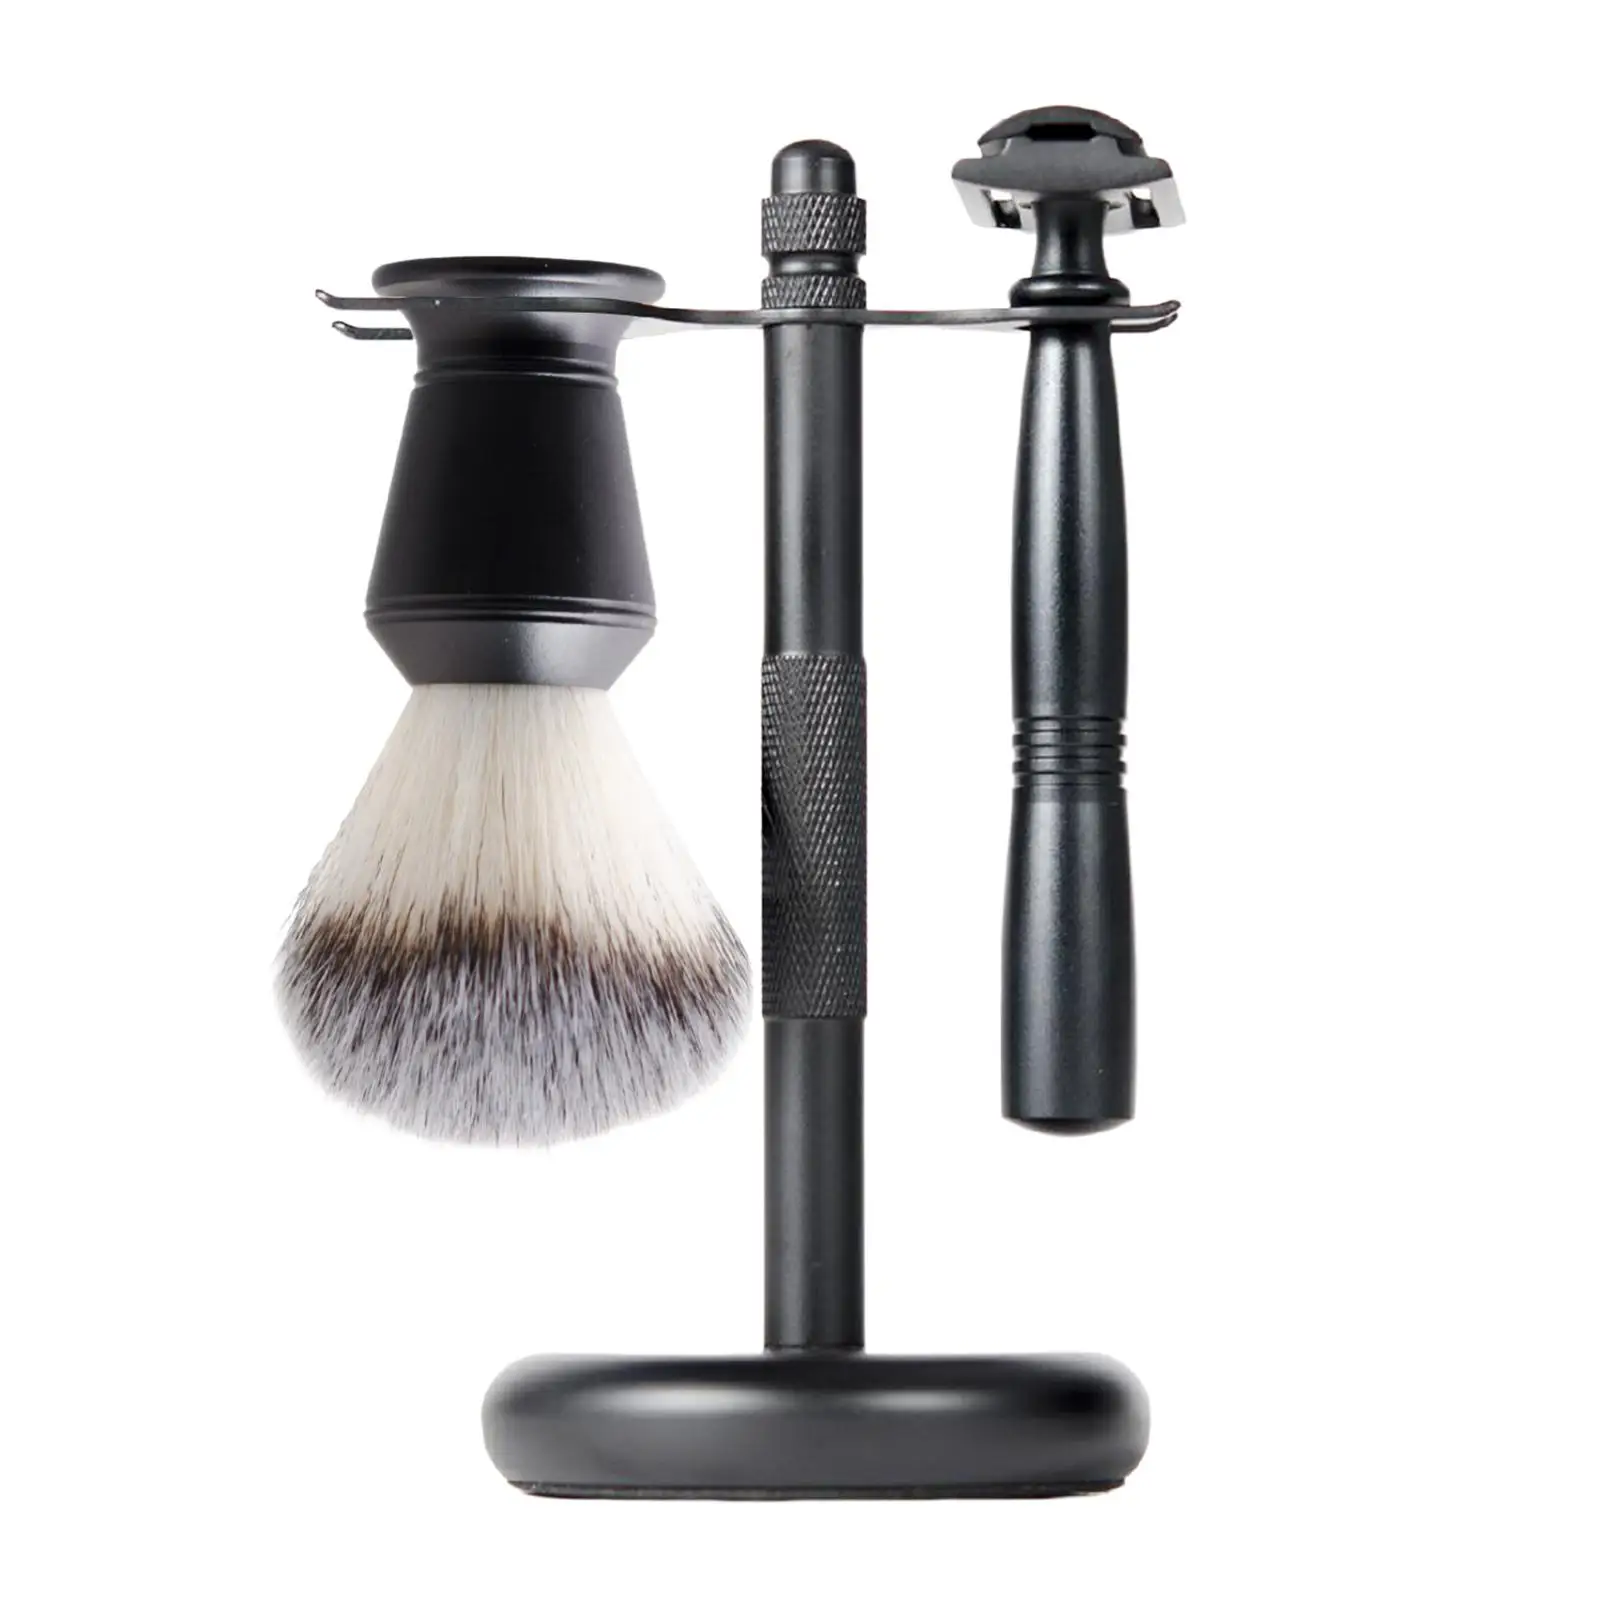 3Pcs Mens Shaving Kit Black Color Shaving Cleaning Tool Razor+ Stand Holder + Shaving Brush for Men Dad Boyfriend Husband Luxury